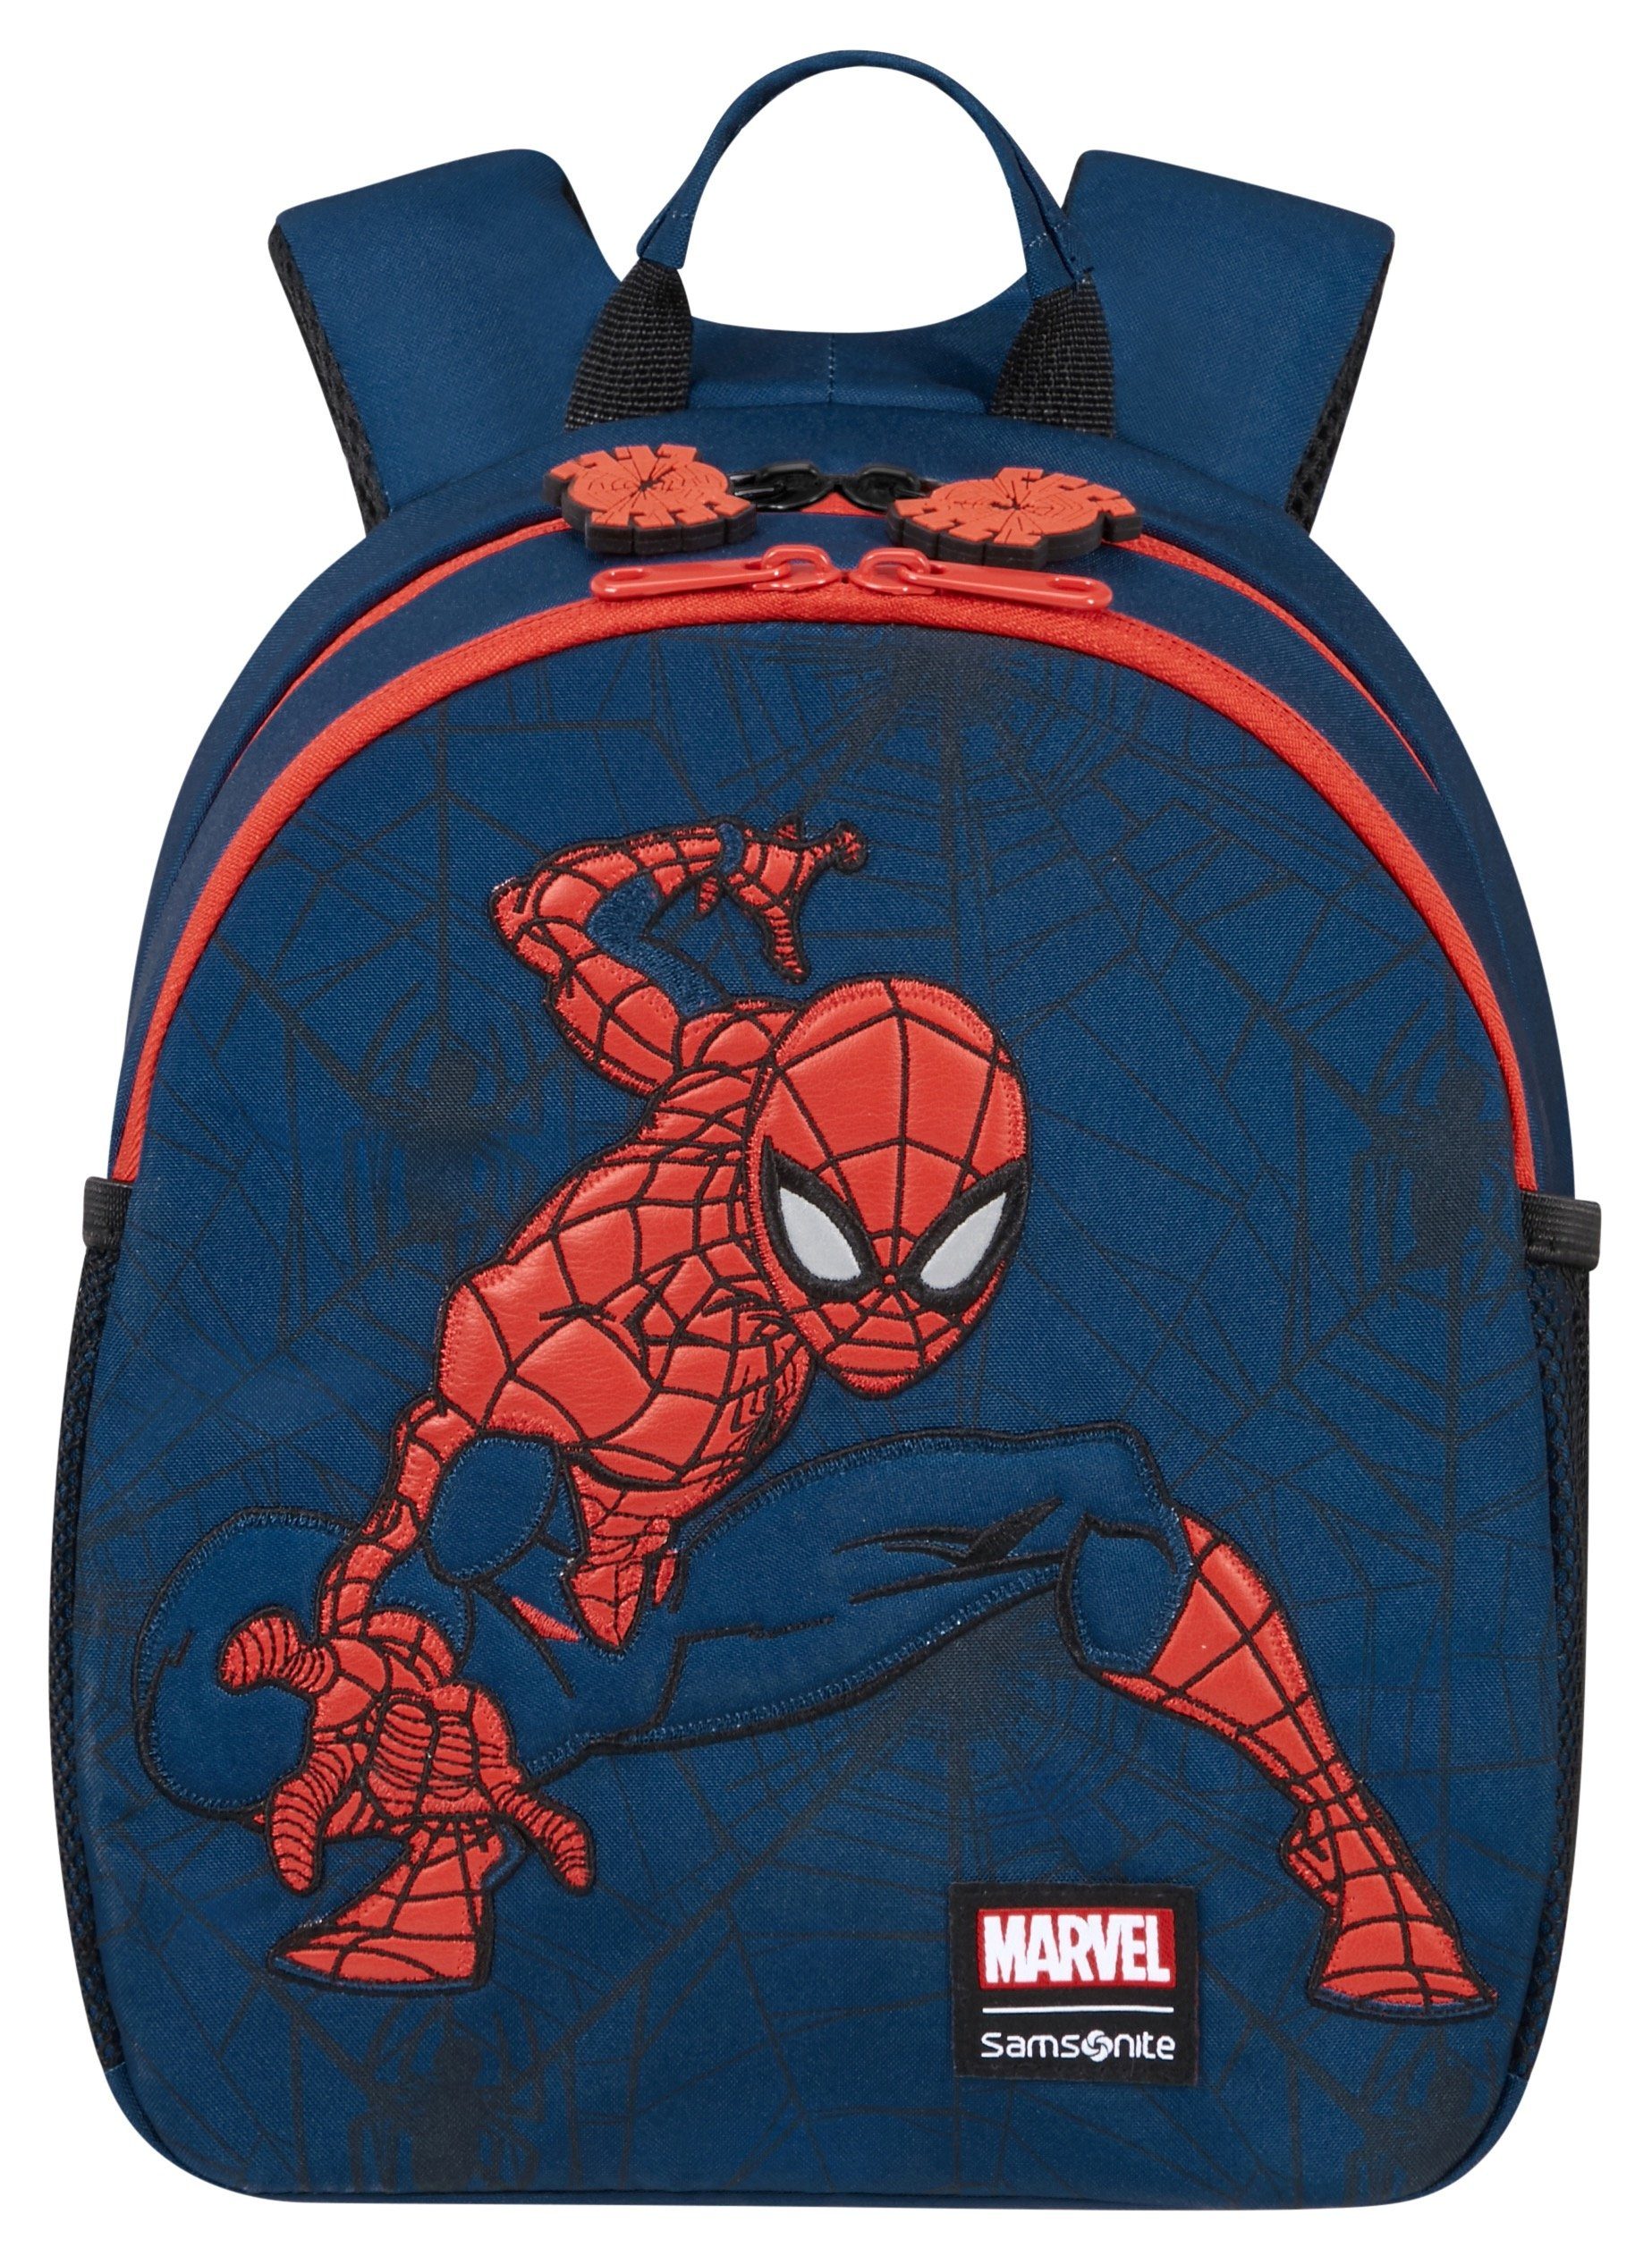 aus Disney Samsonite S Marvel Kinderrucksack web, Ultimate Material Spiderman 2.0 recyceltem BP